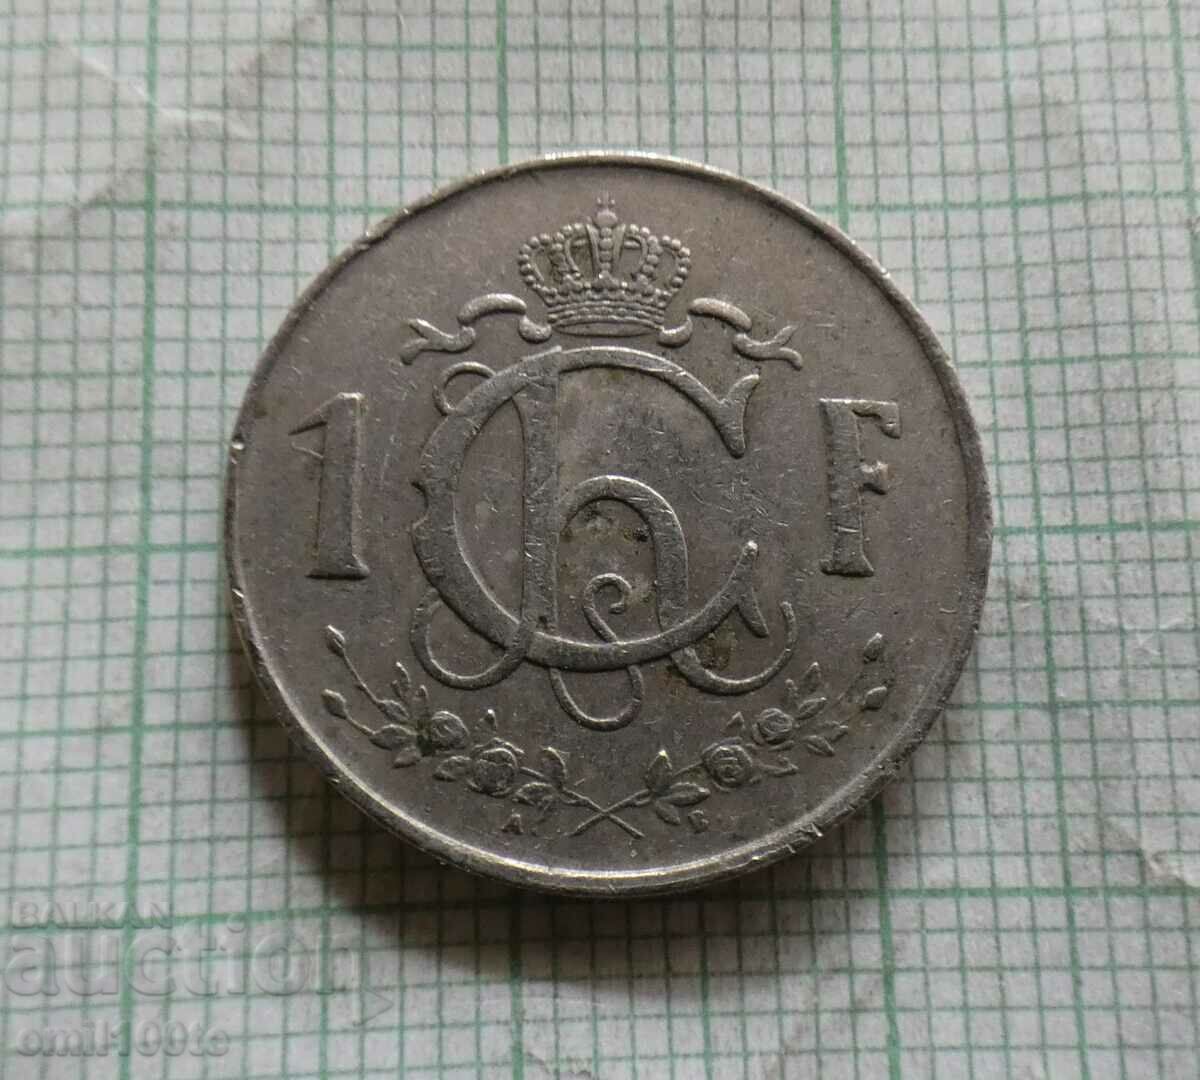 1 Franc 1952 Luxenburg